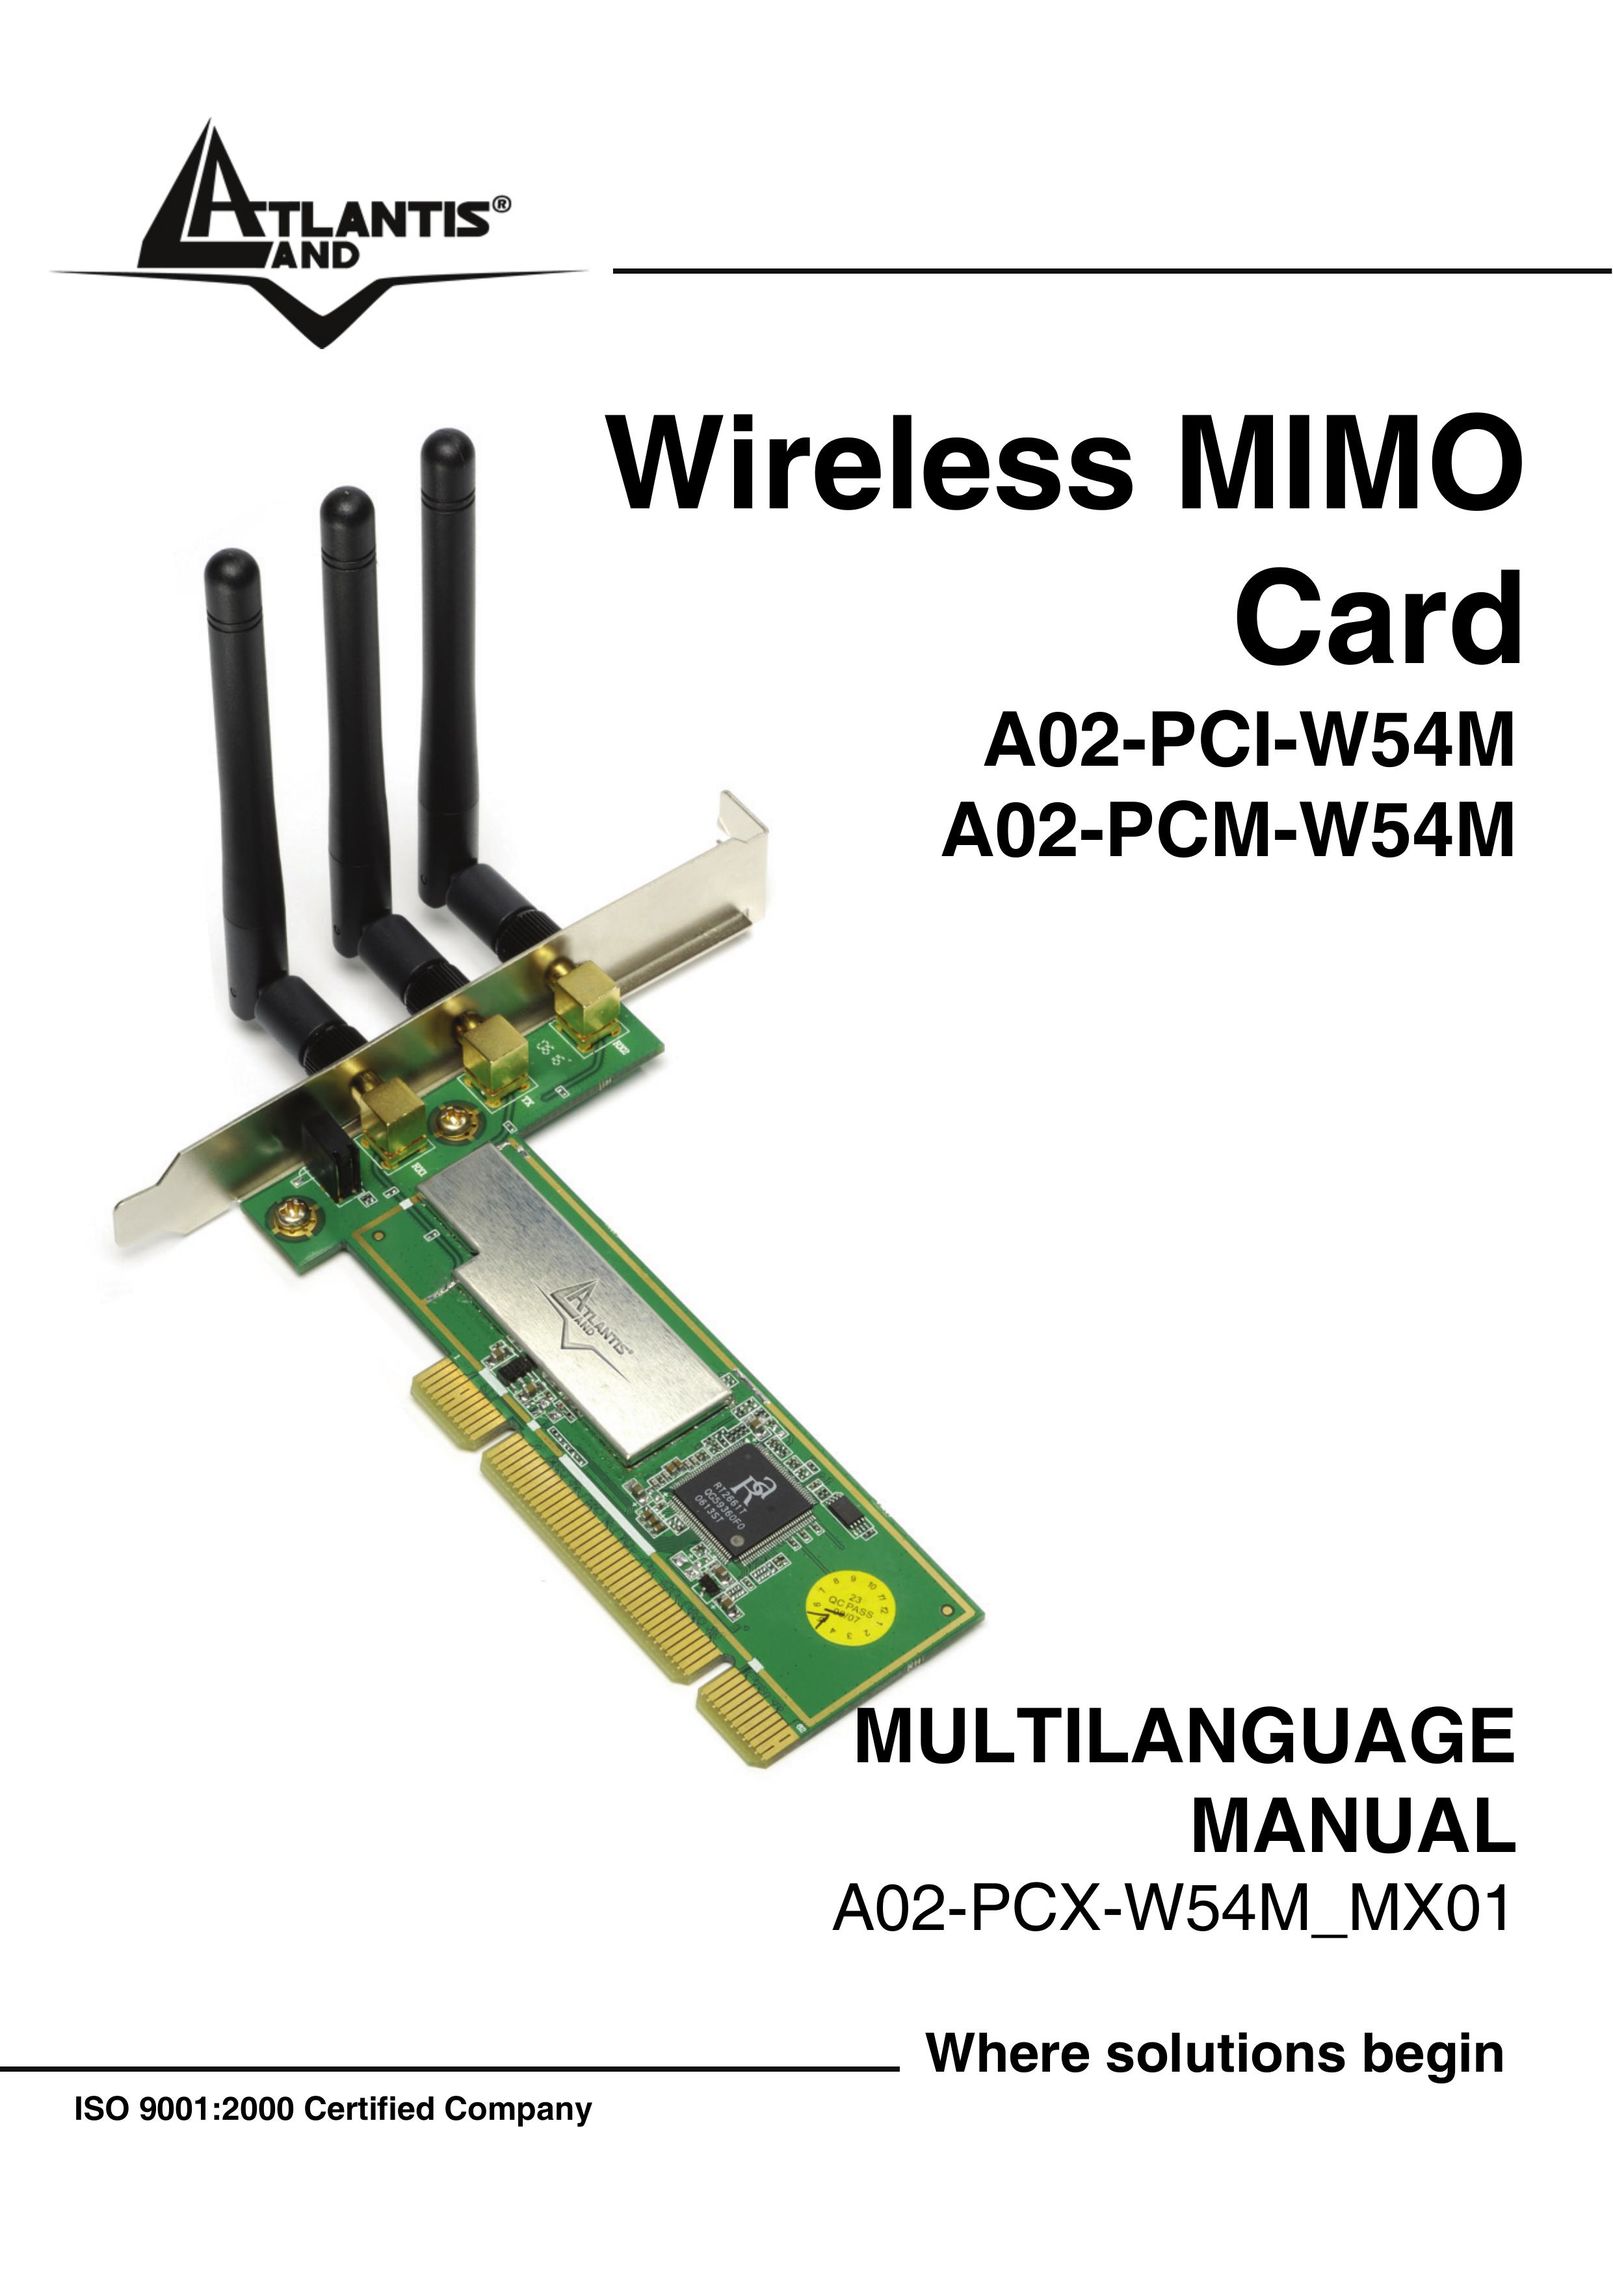 Atlantis Land A02-PCM-W54M Network Card User Manual